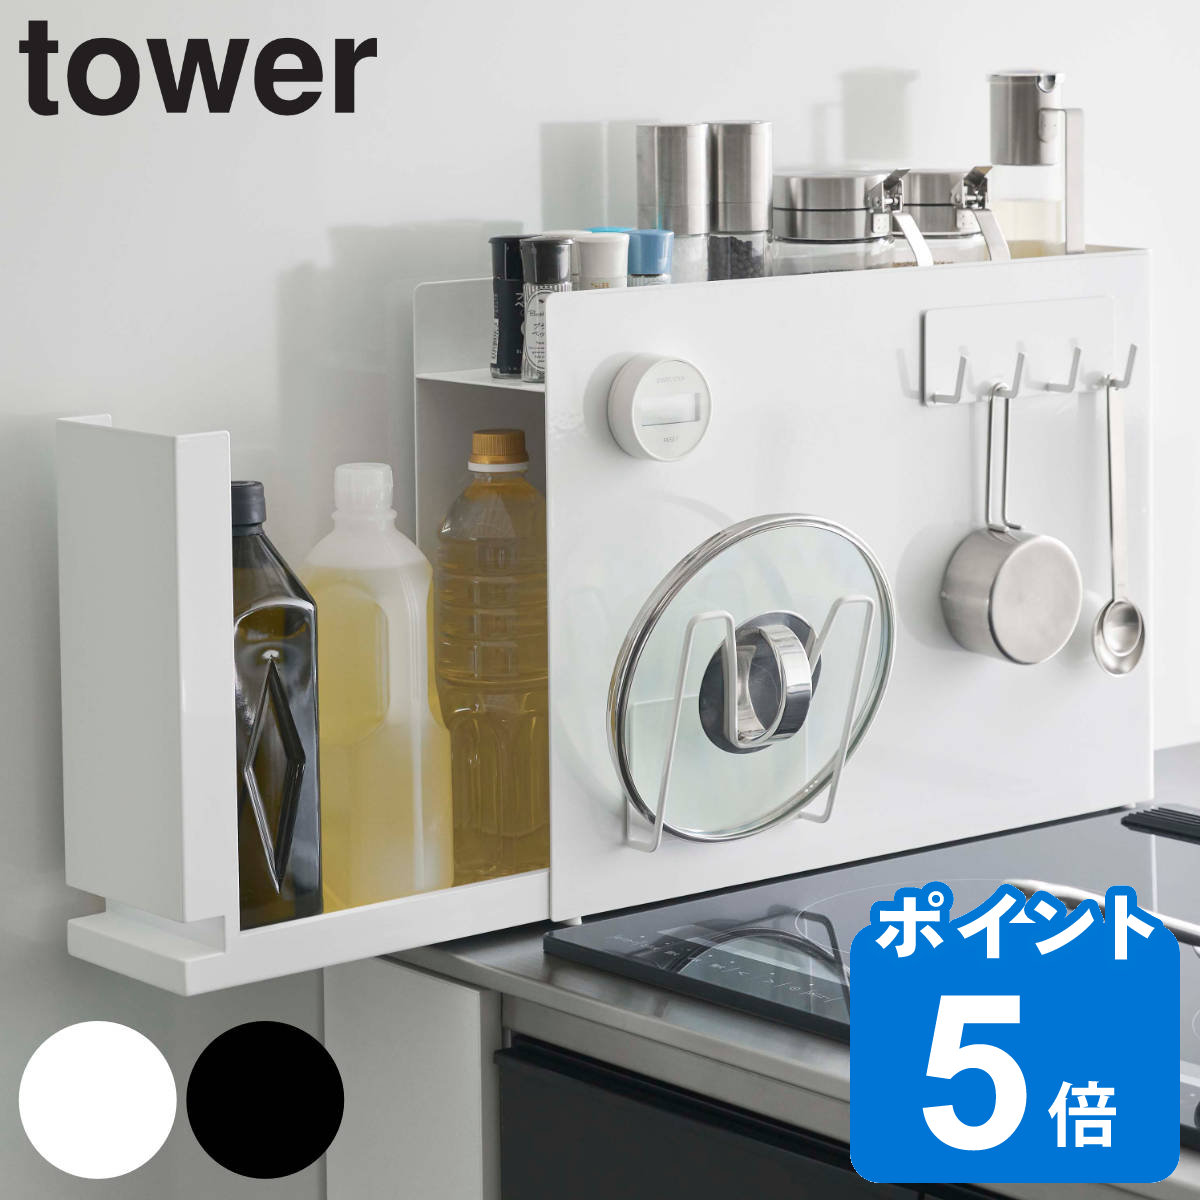 山崎実業 tower 隠せる調味料ラック タワー